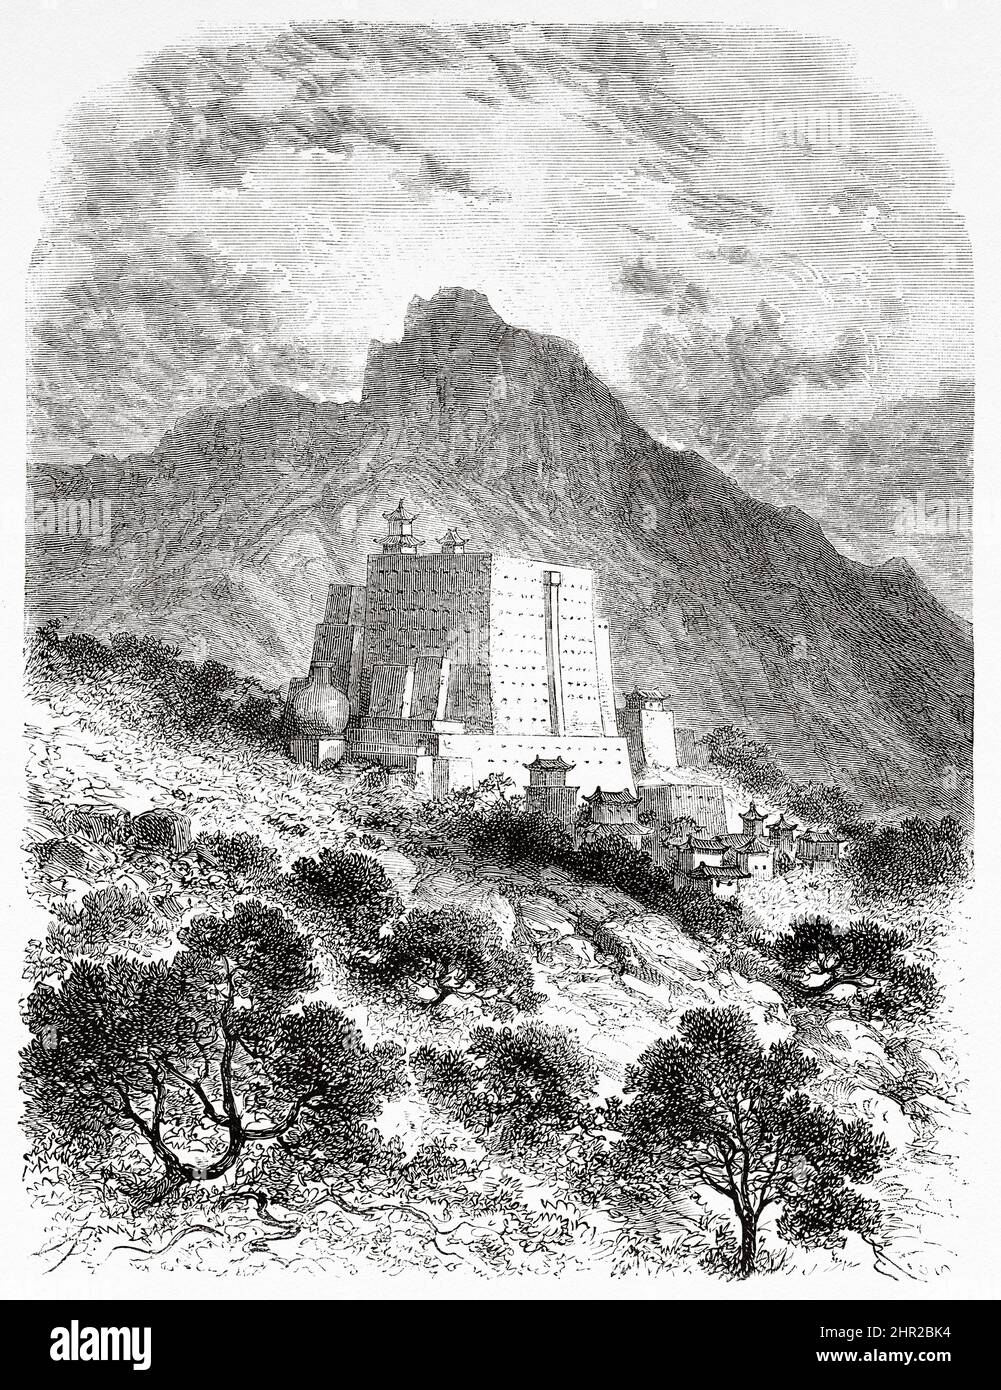 Monastère tibétain, Tibet. Asie. Voyage en Mongolie par Nikolai Mijailovich Przewalski en 1870-1873, le Tour du monde 1877 Banque D'Images